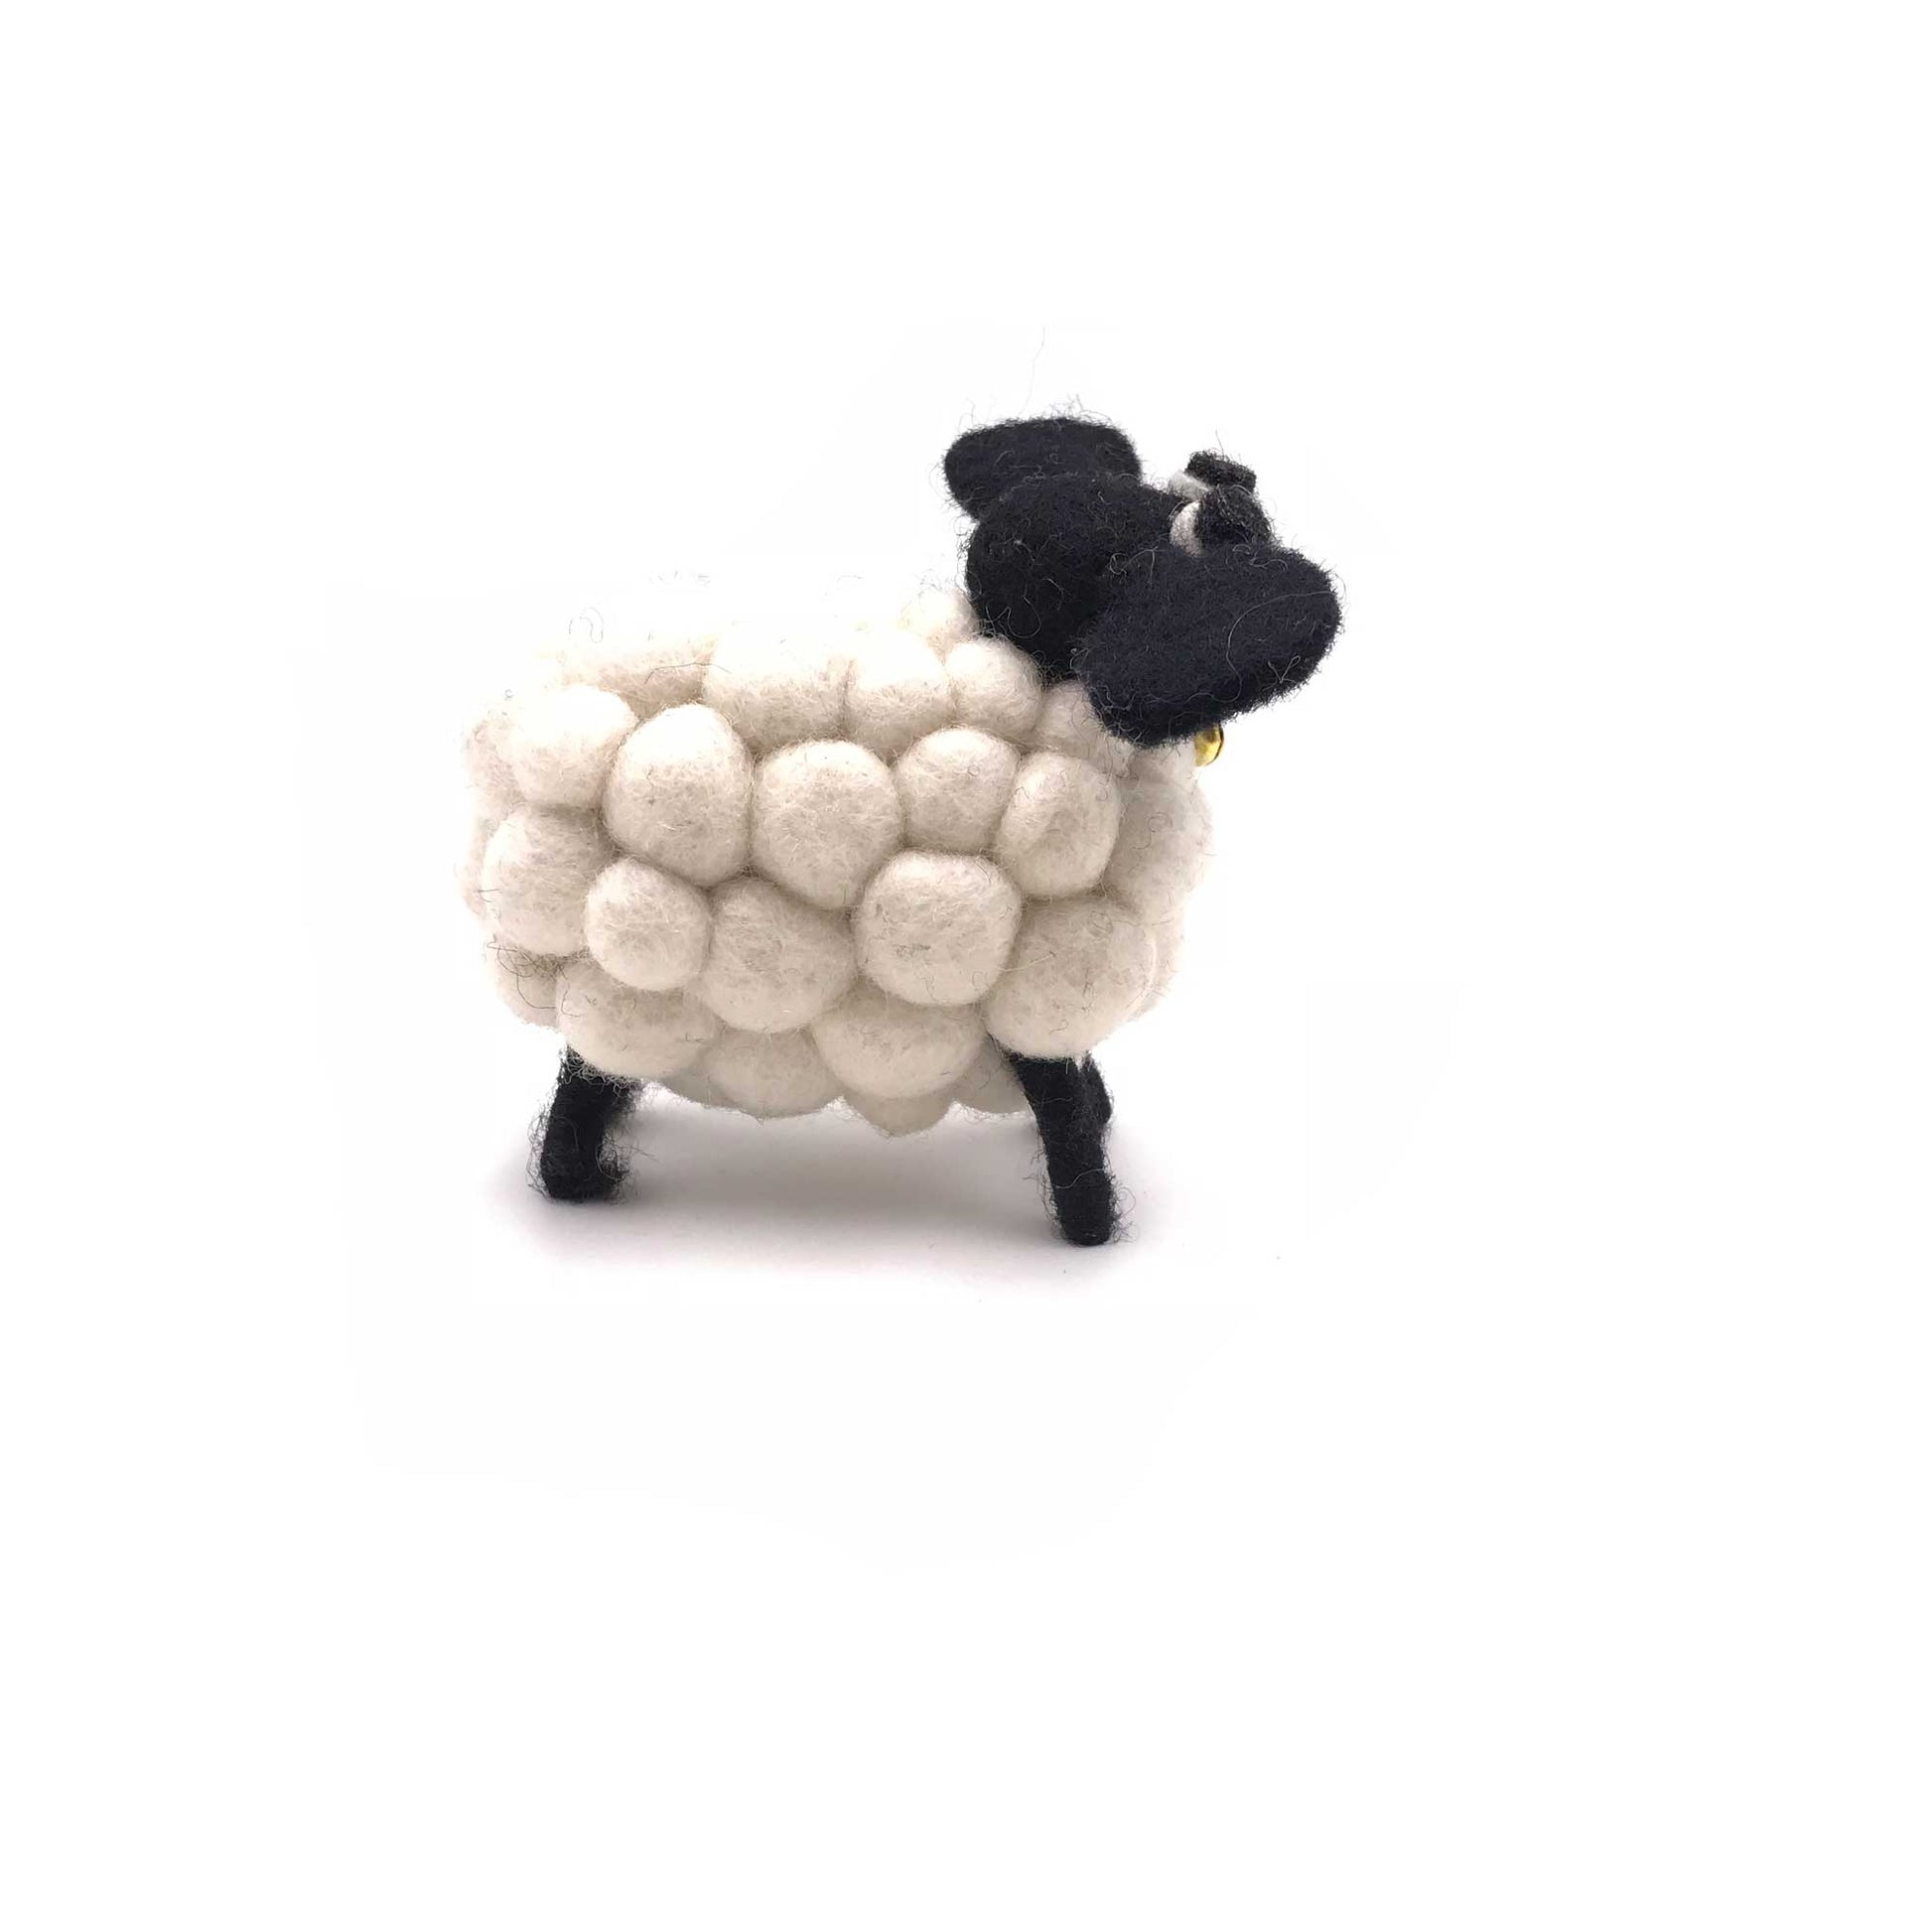 felt sheep for home decor